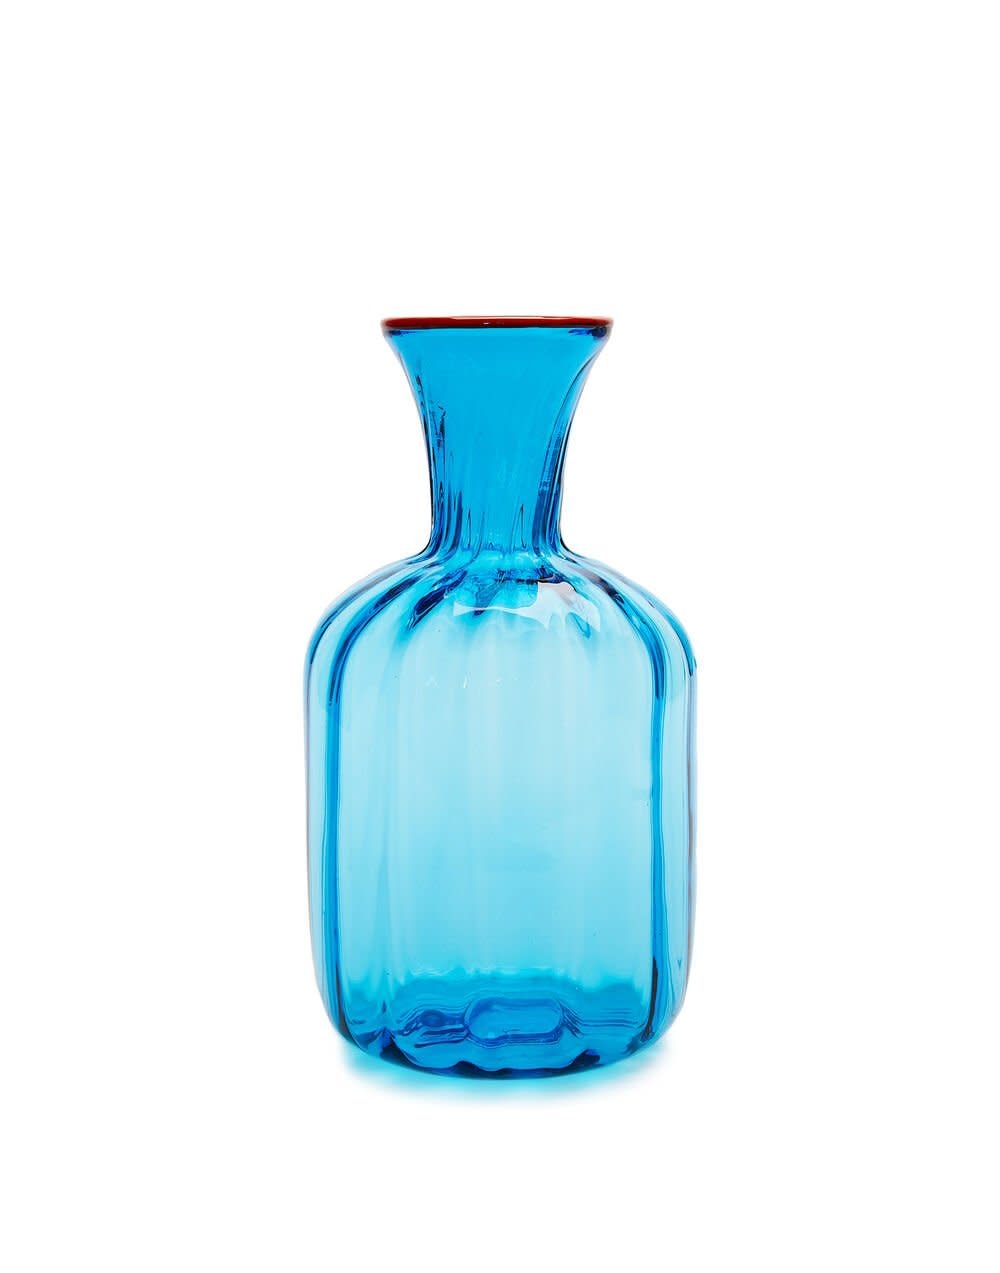 Maison Lipari LA DOUBLE J Carafe | Murano Glass | Turquoise | D: 12 cm H: 22.4 cm  LA DOUBLE J.